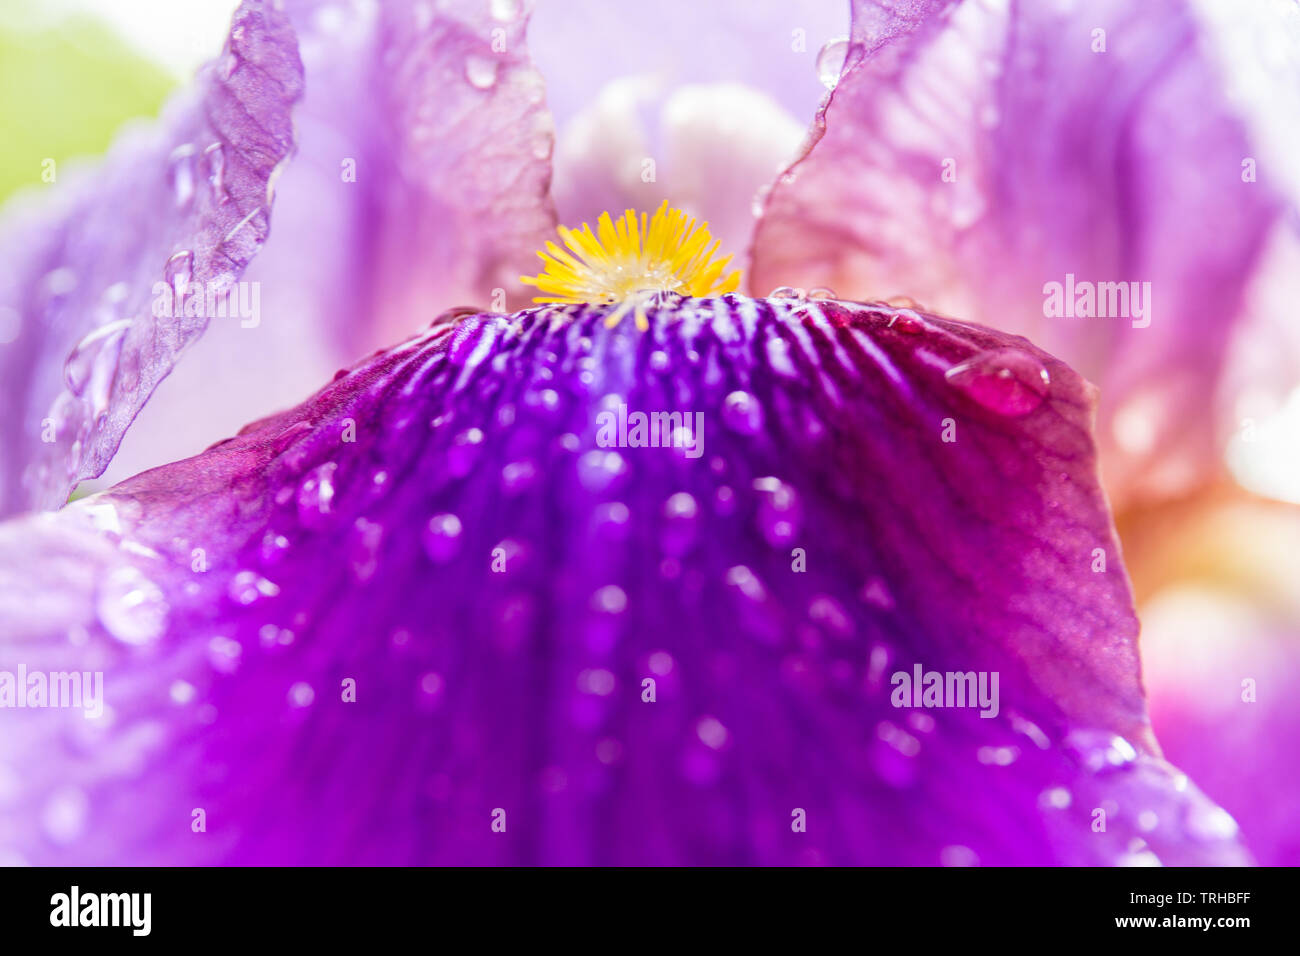 Púrpura iris barbado bloom el pistilo y los pétalos closeup. En el interior de la flor del iris, morado, violeta, amarillo y blanco. Fotografía macro de iris. Foto de stock